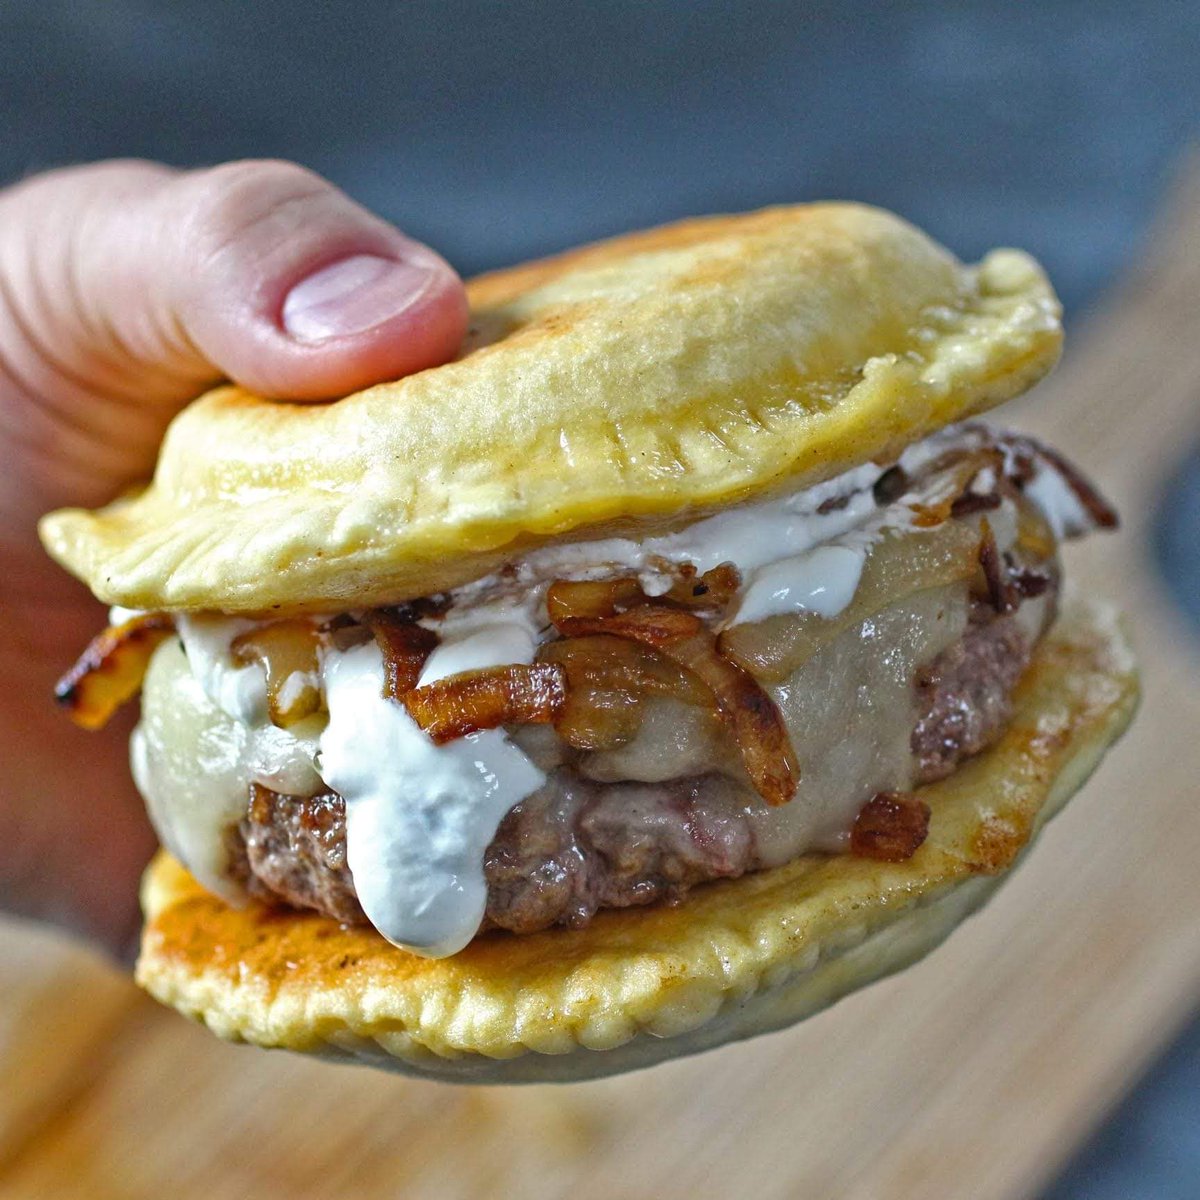 A pierogi burger. Yes please!!!!!!!!! 🤤
#WhitePeopleFood